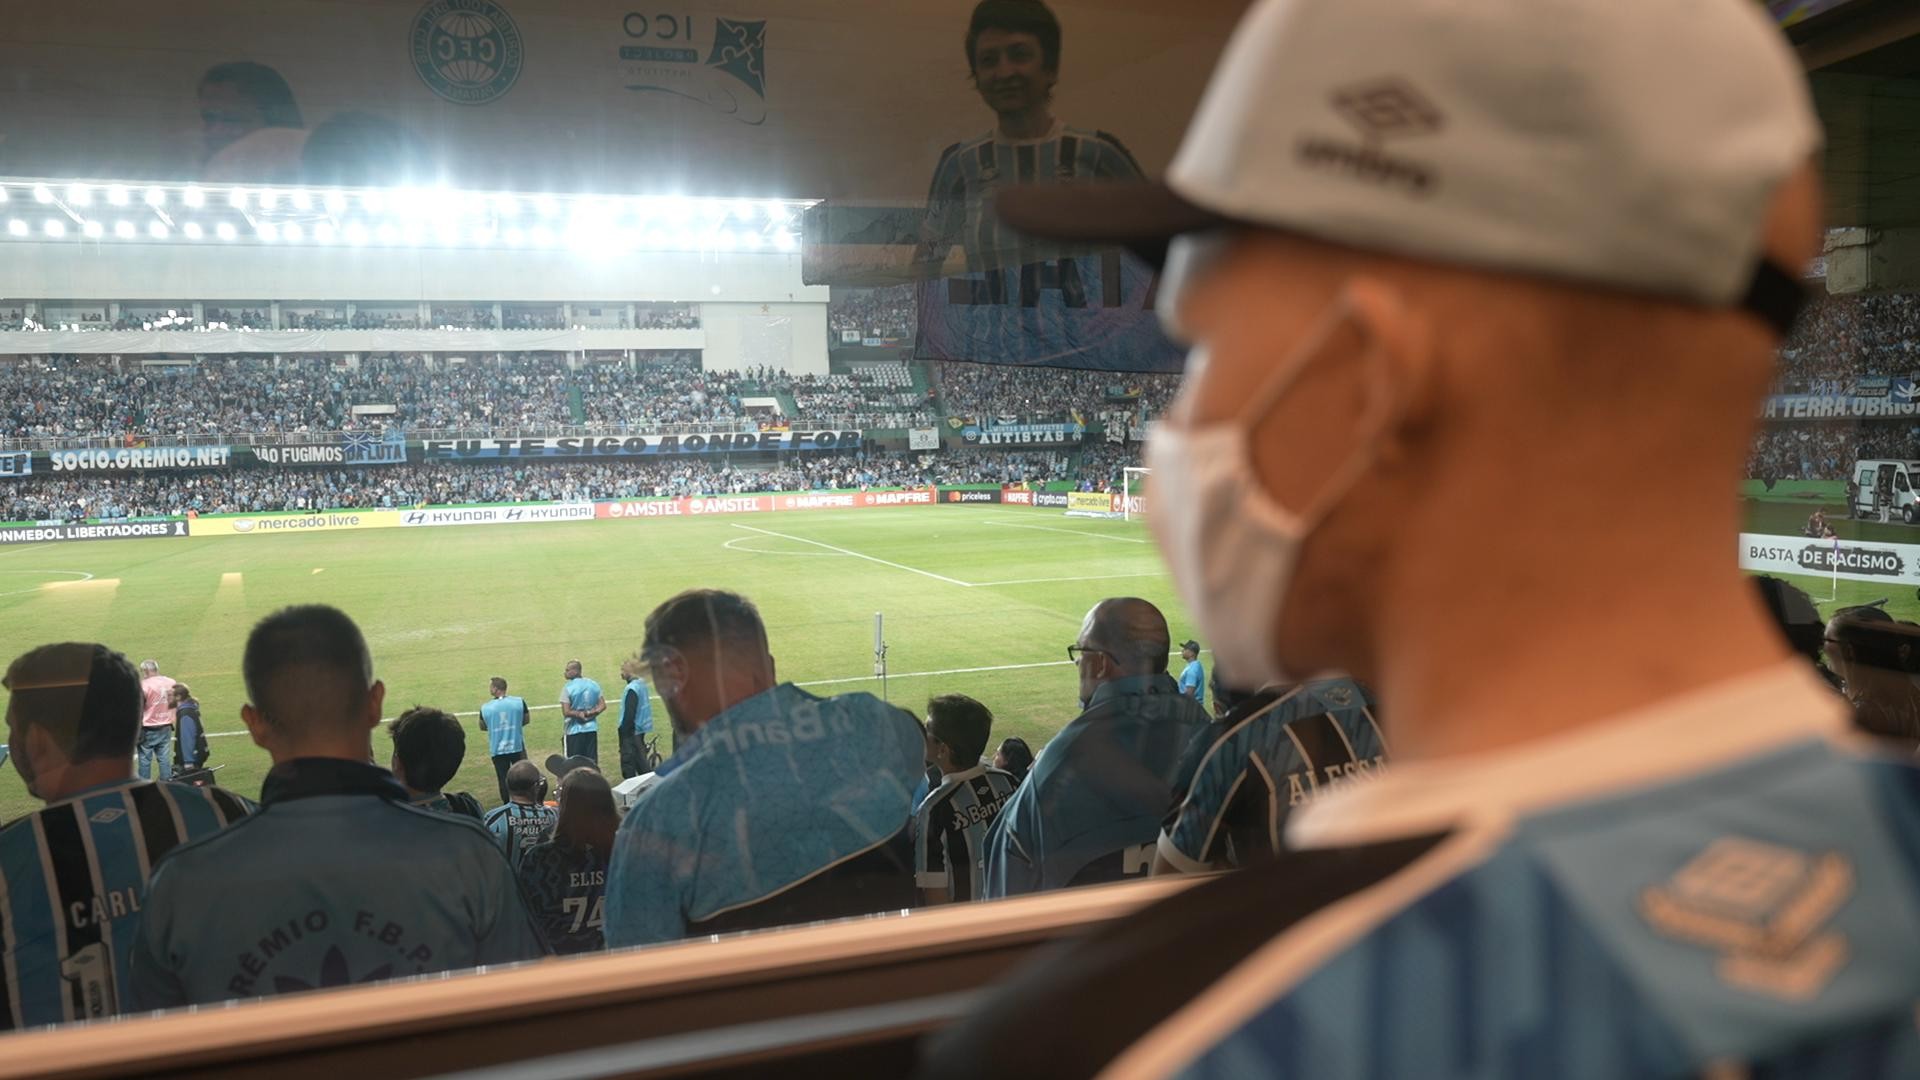 Jovem gremista em tratamento contra câncer em Curitiba realiza sonho de ver o time jogar: 